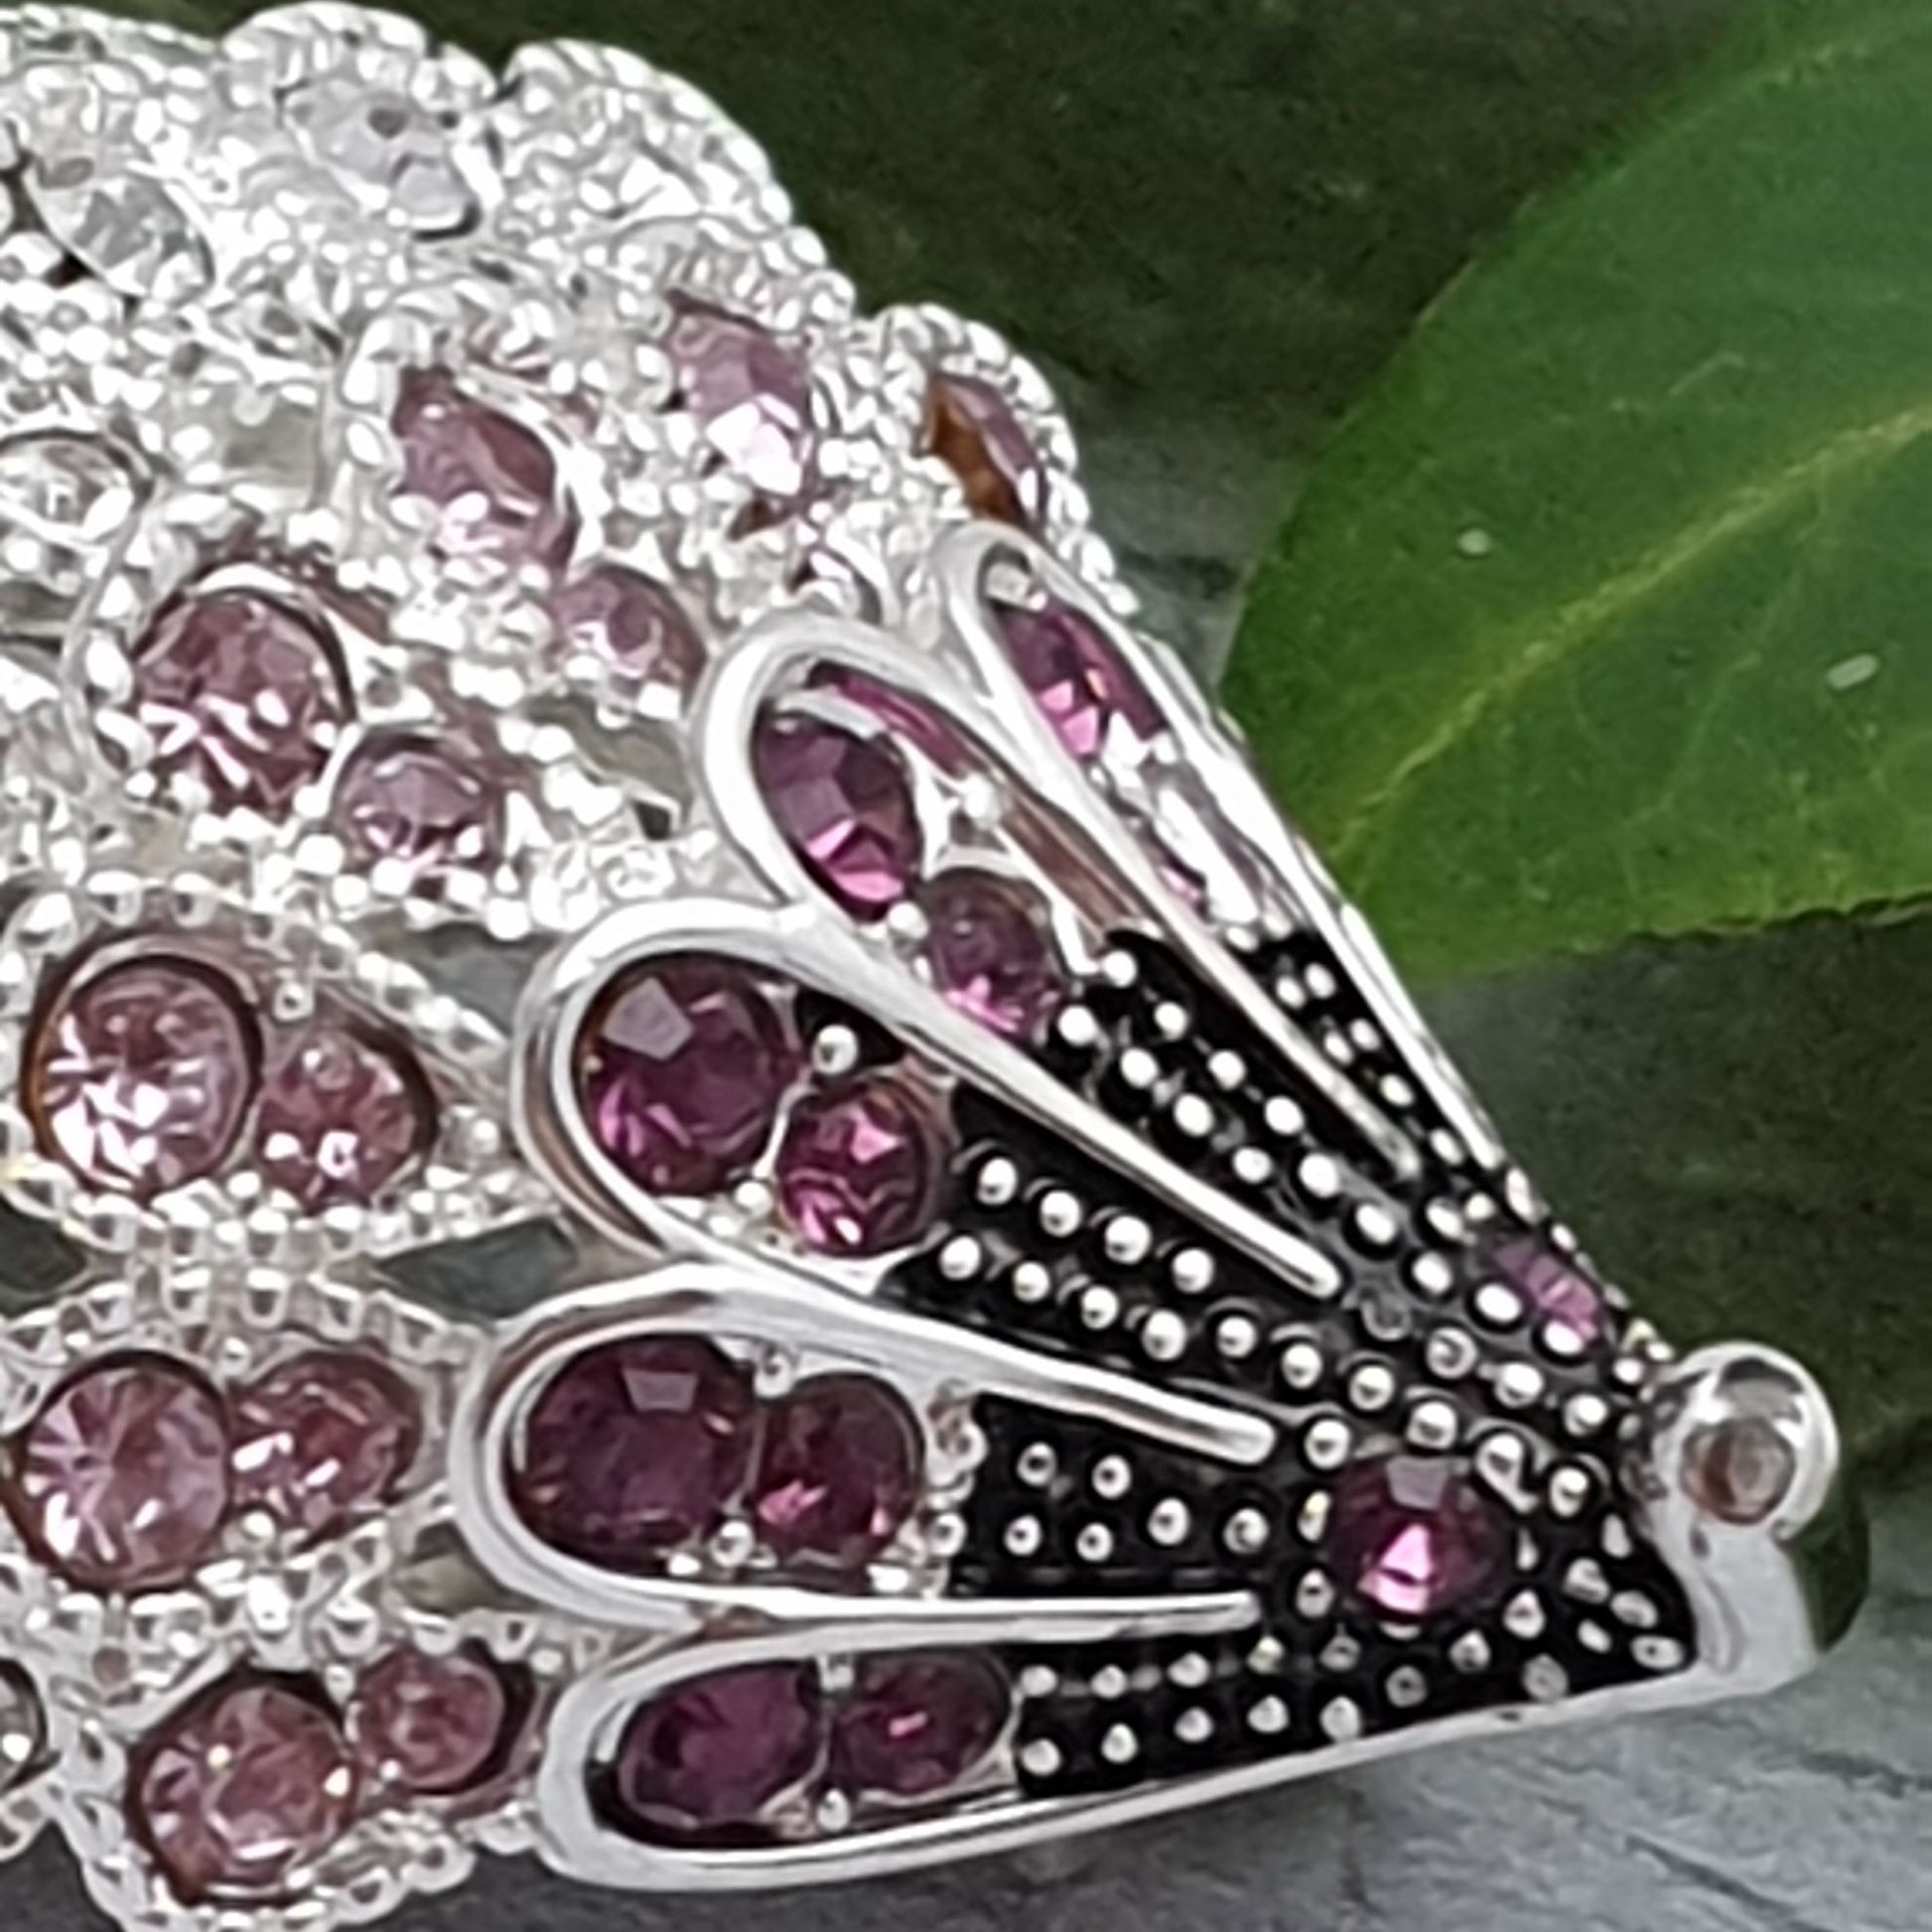 Hedgehog brooch decorated in pink diamante crystals